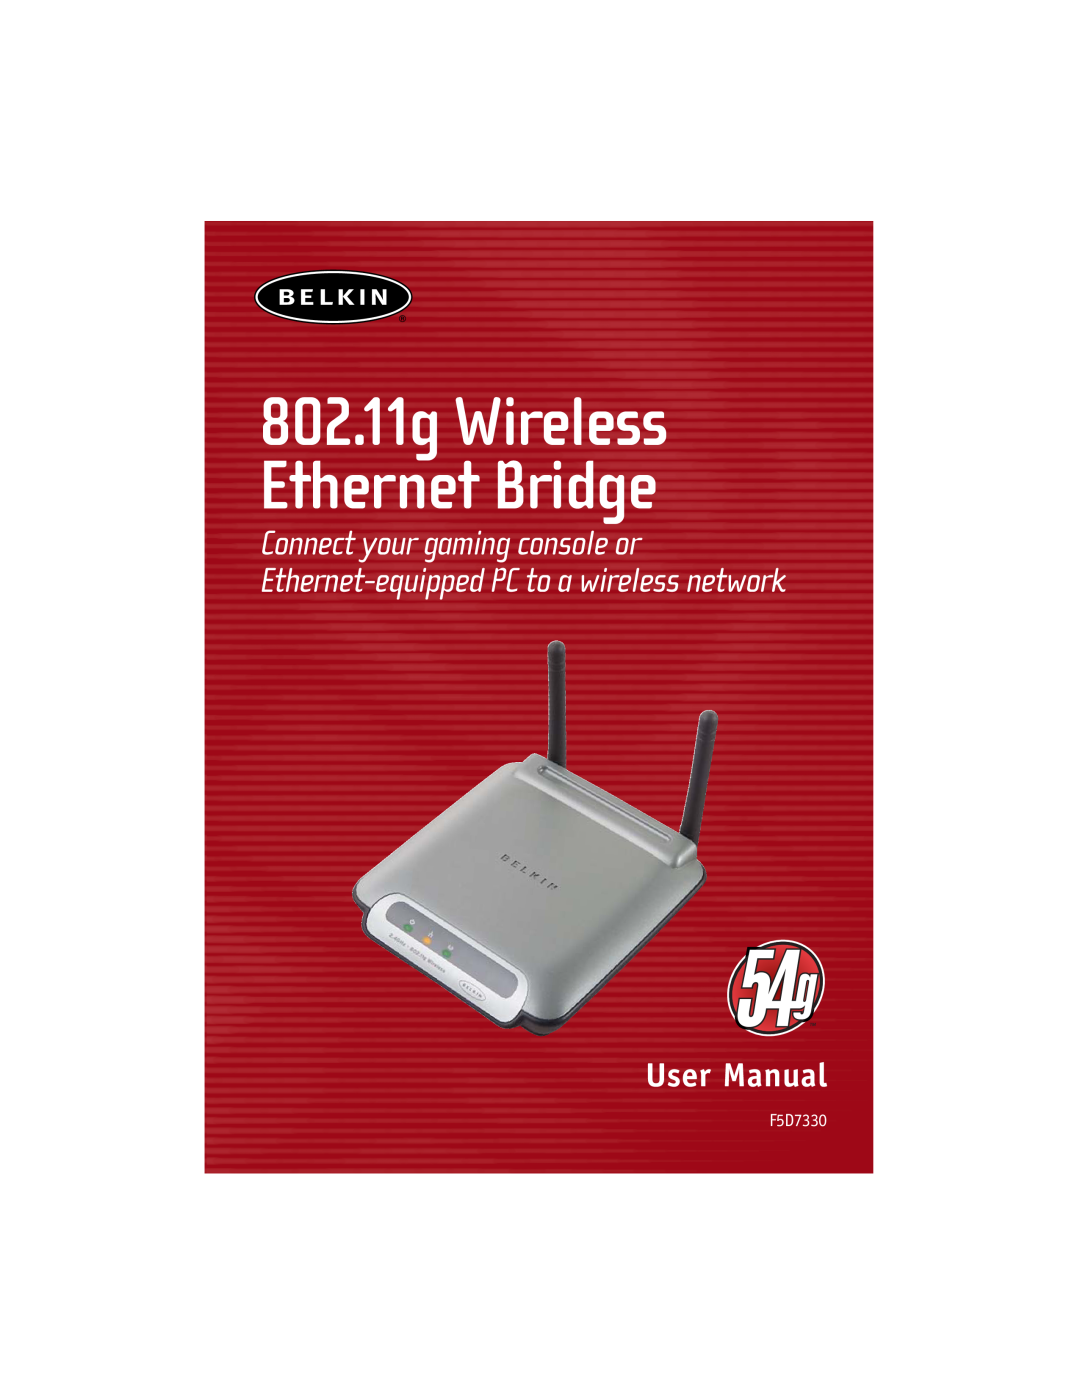 Belkin manual 802.11g Wireless Ethernet Bridge, F5D7330 